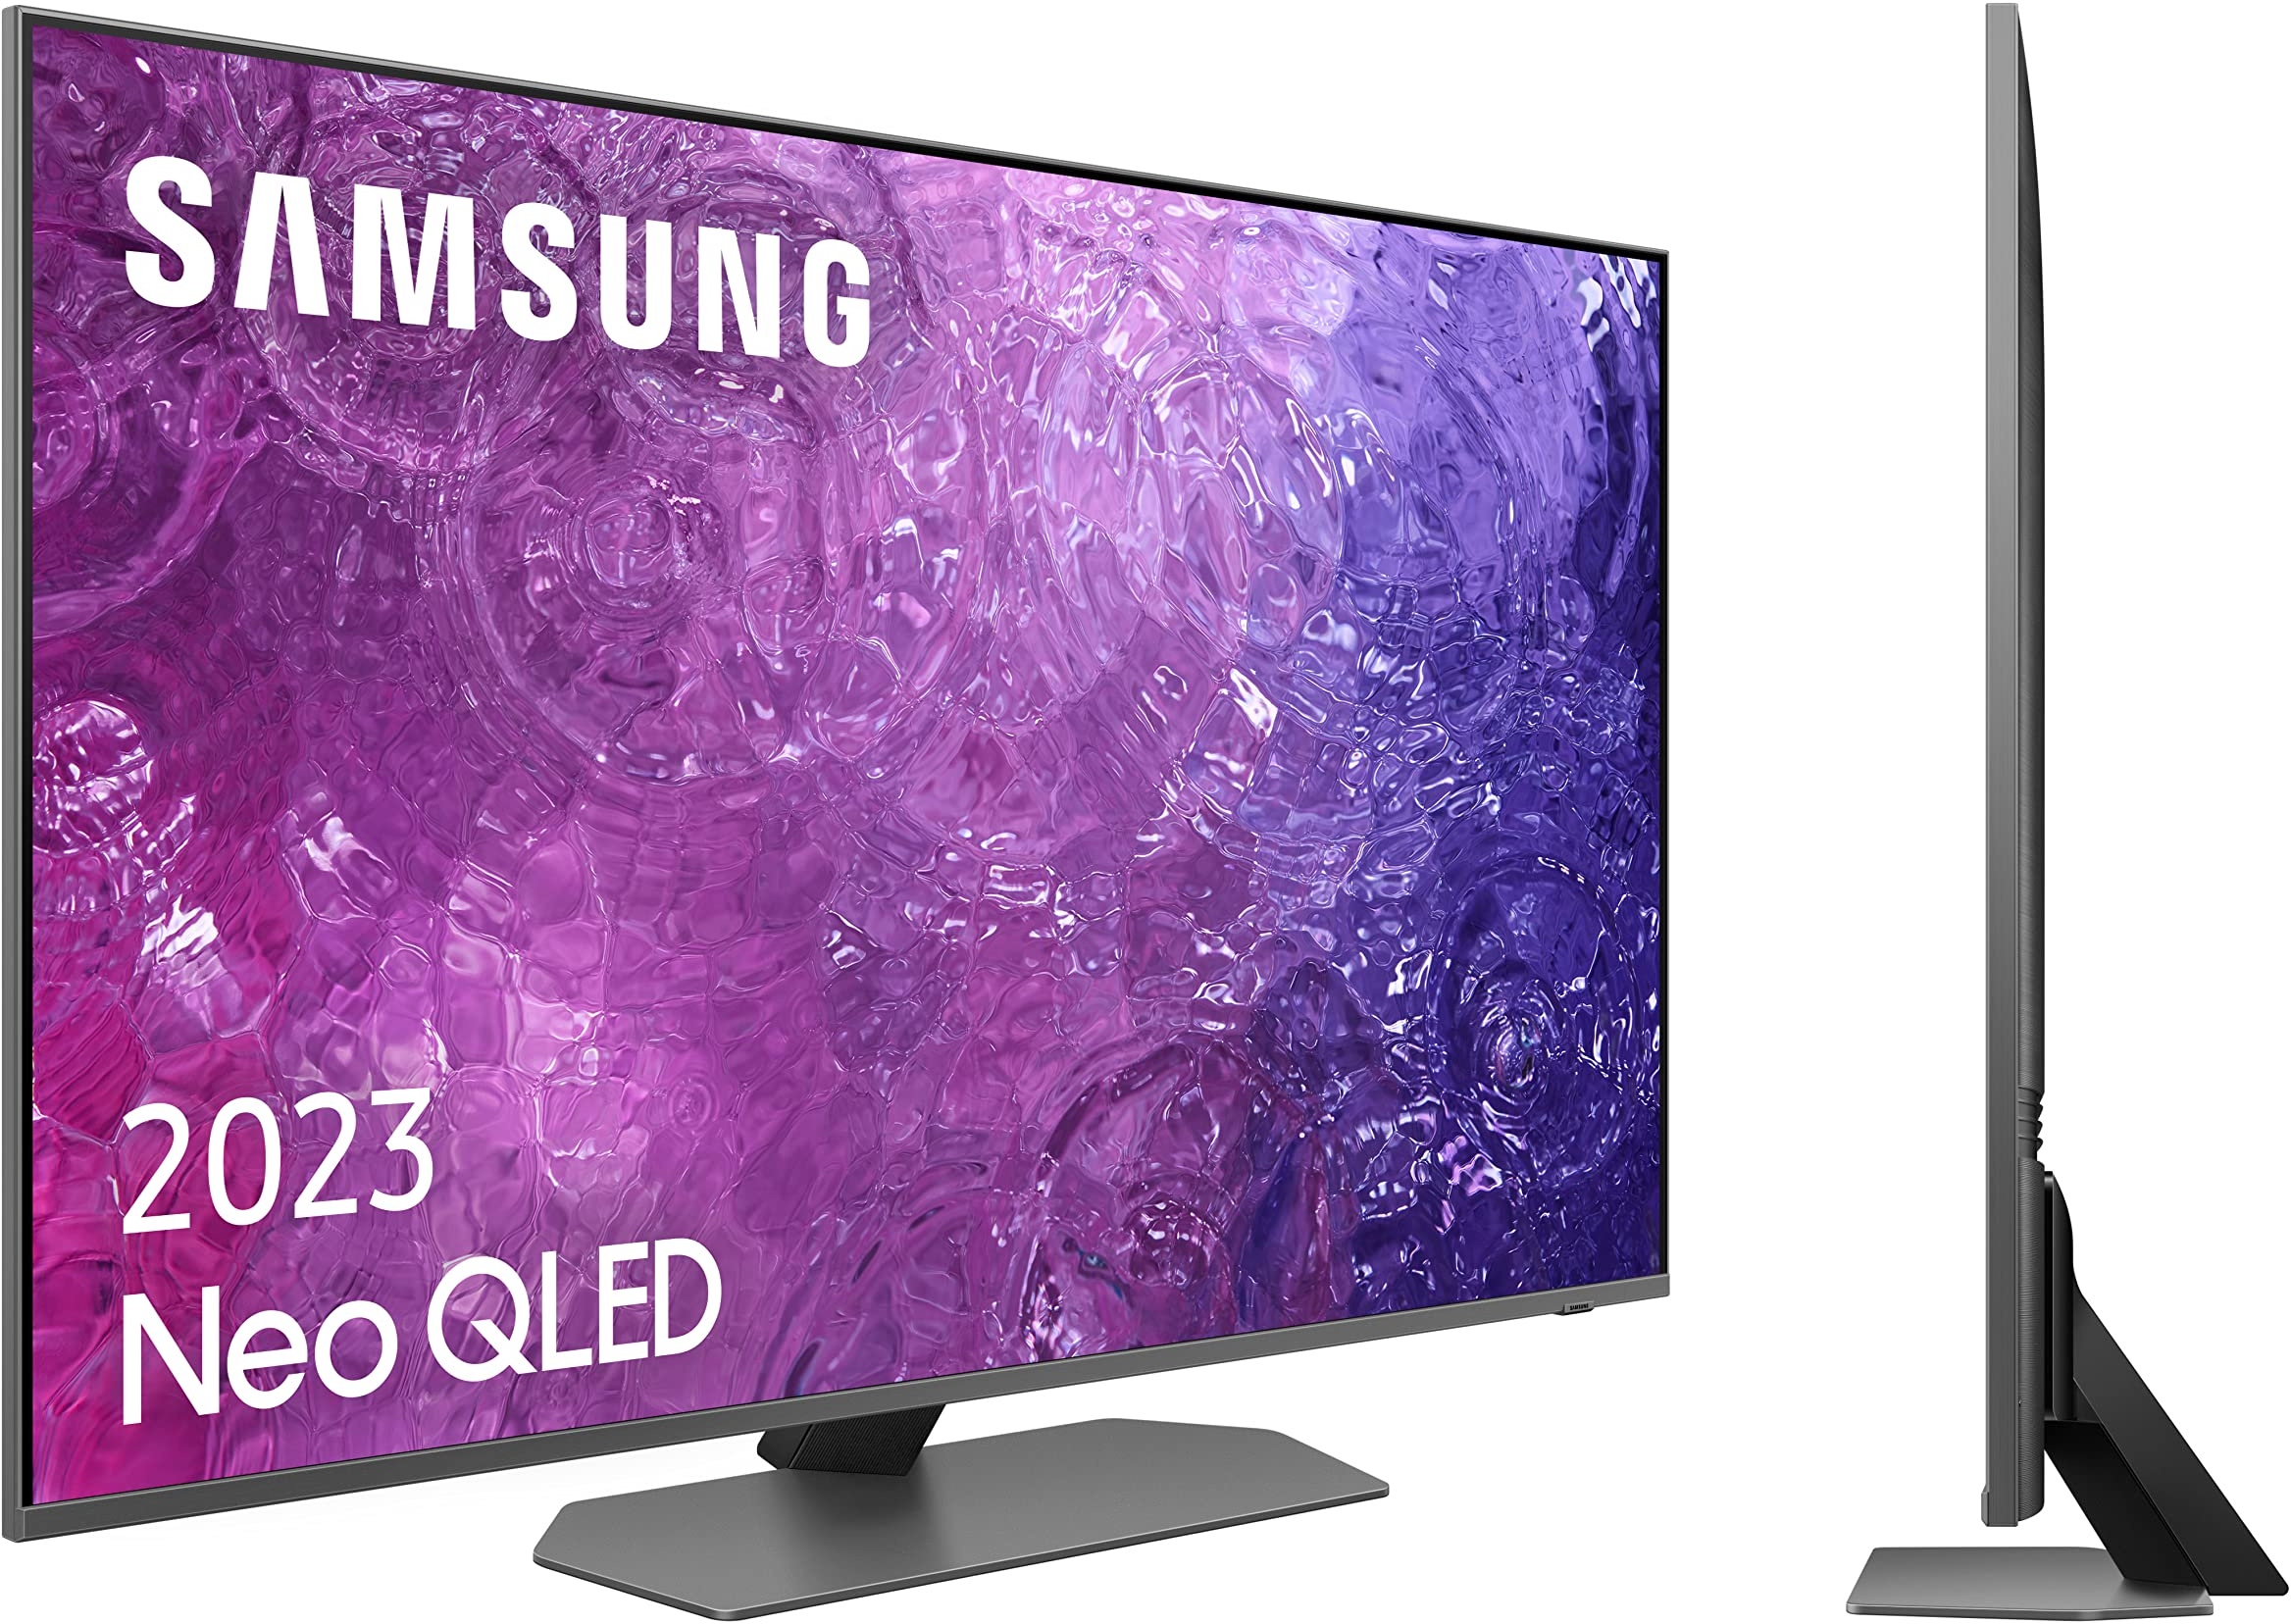 Samsung Neo QLED 4K 2023 43QN90C 43 Zoll Smart TV TV mit Quantum Matrix Technologie, 4K neuronaler Prozessor mit IA, entspiegeltes Display